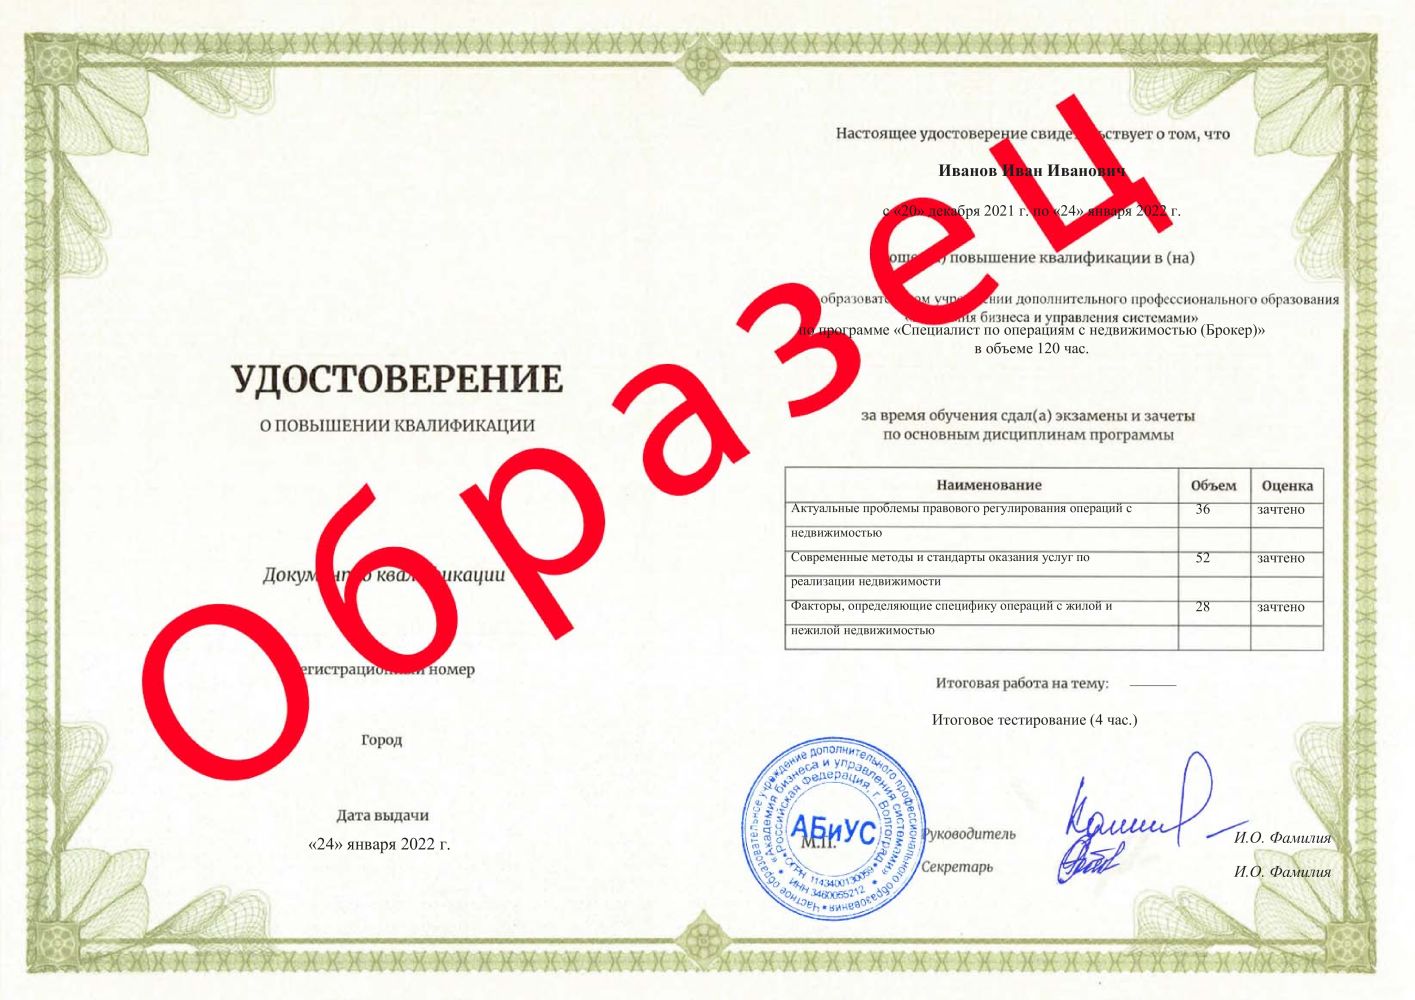 Удостоверение Специалист по операциям с недвижимостью (Брокер) 120 часов 19625 руб.